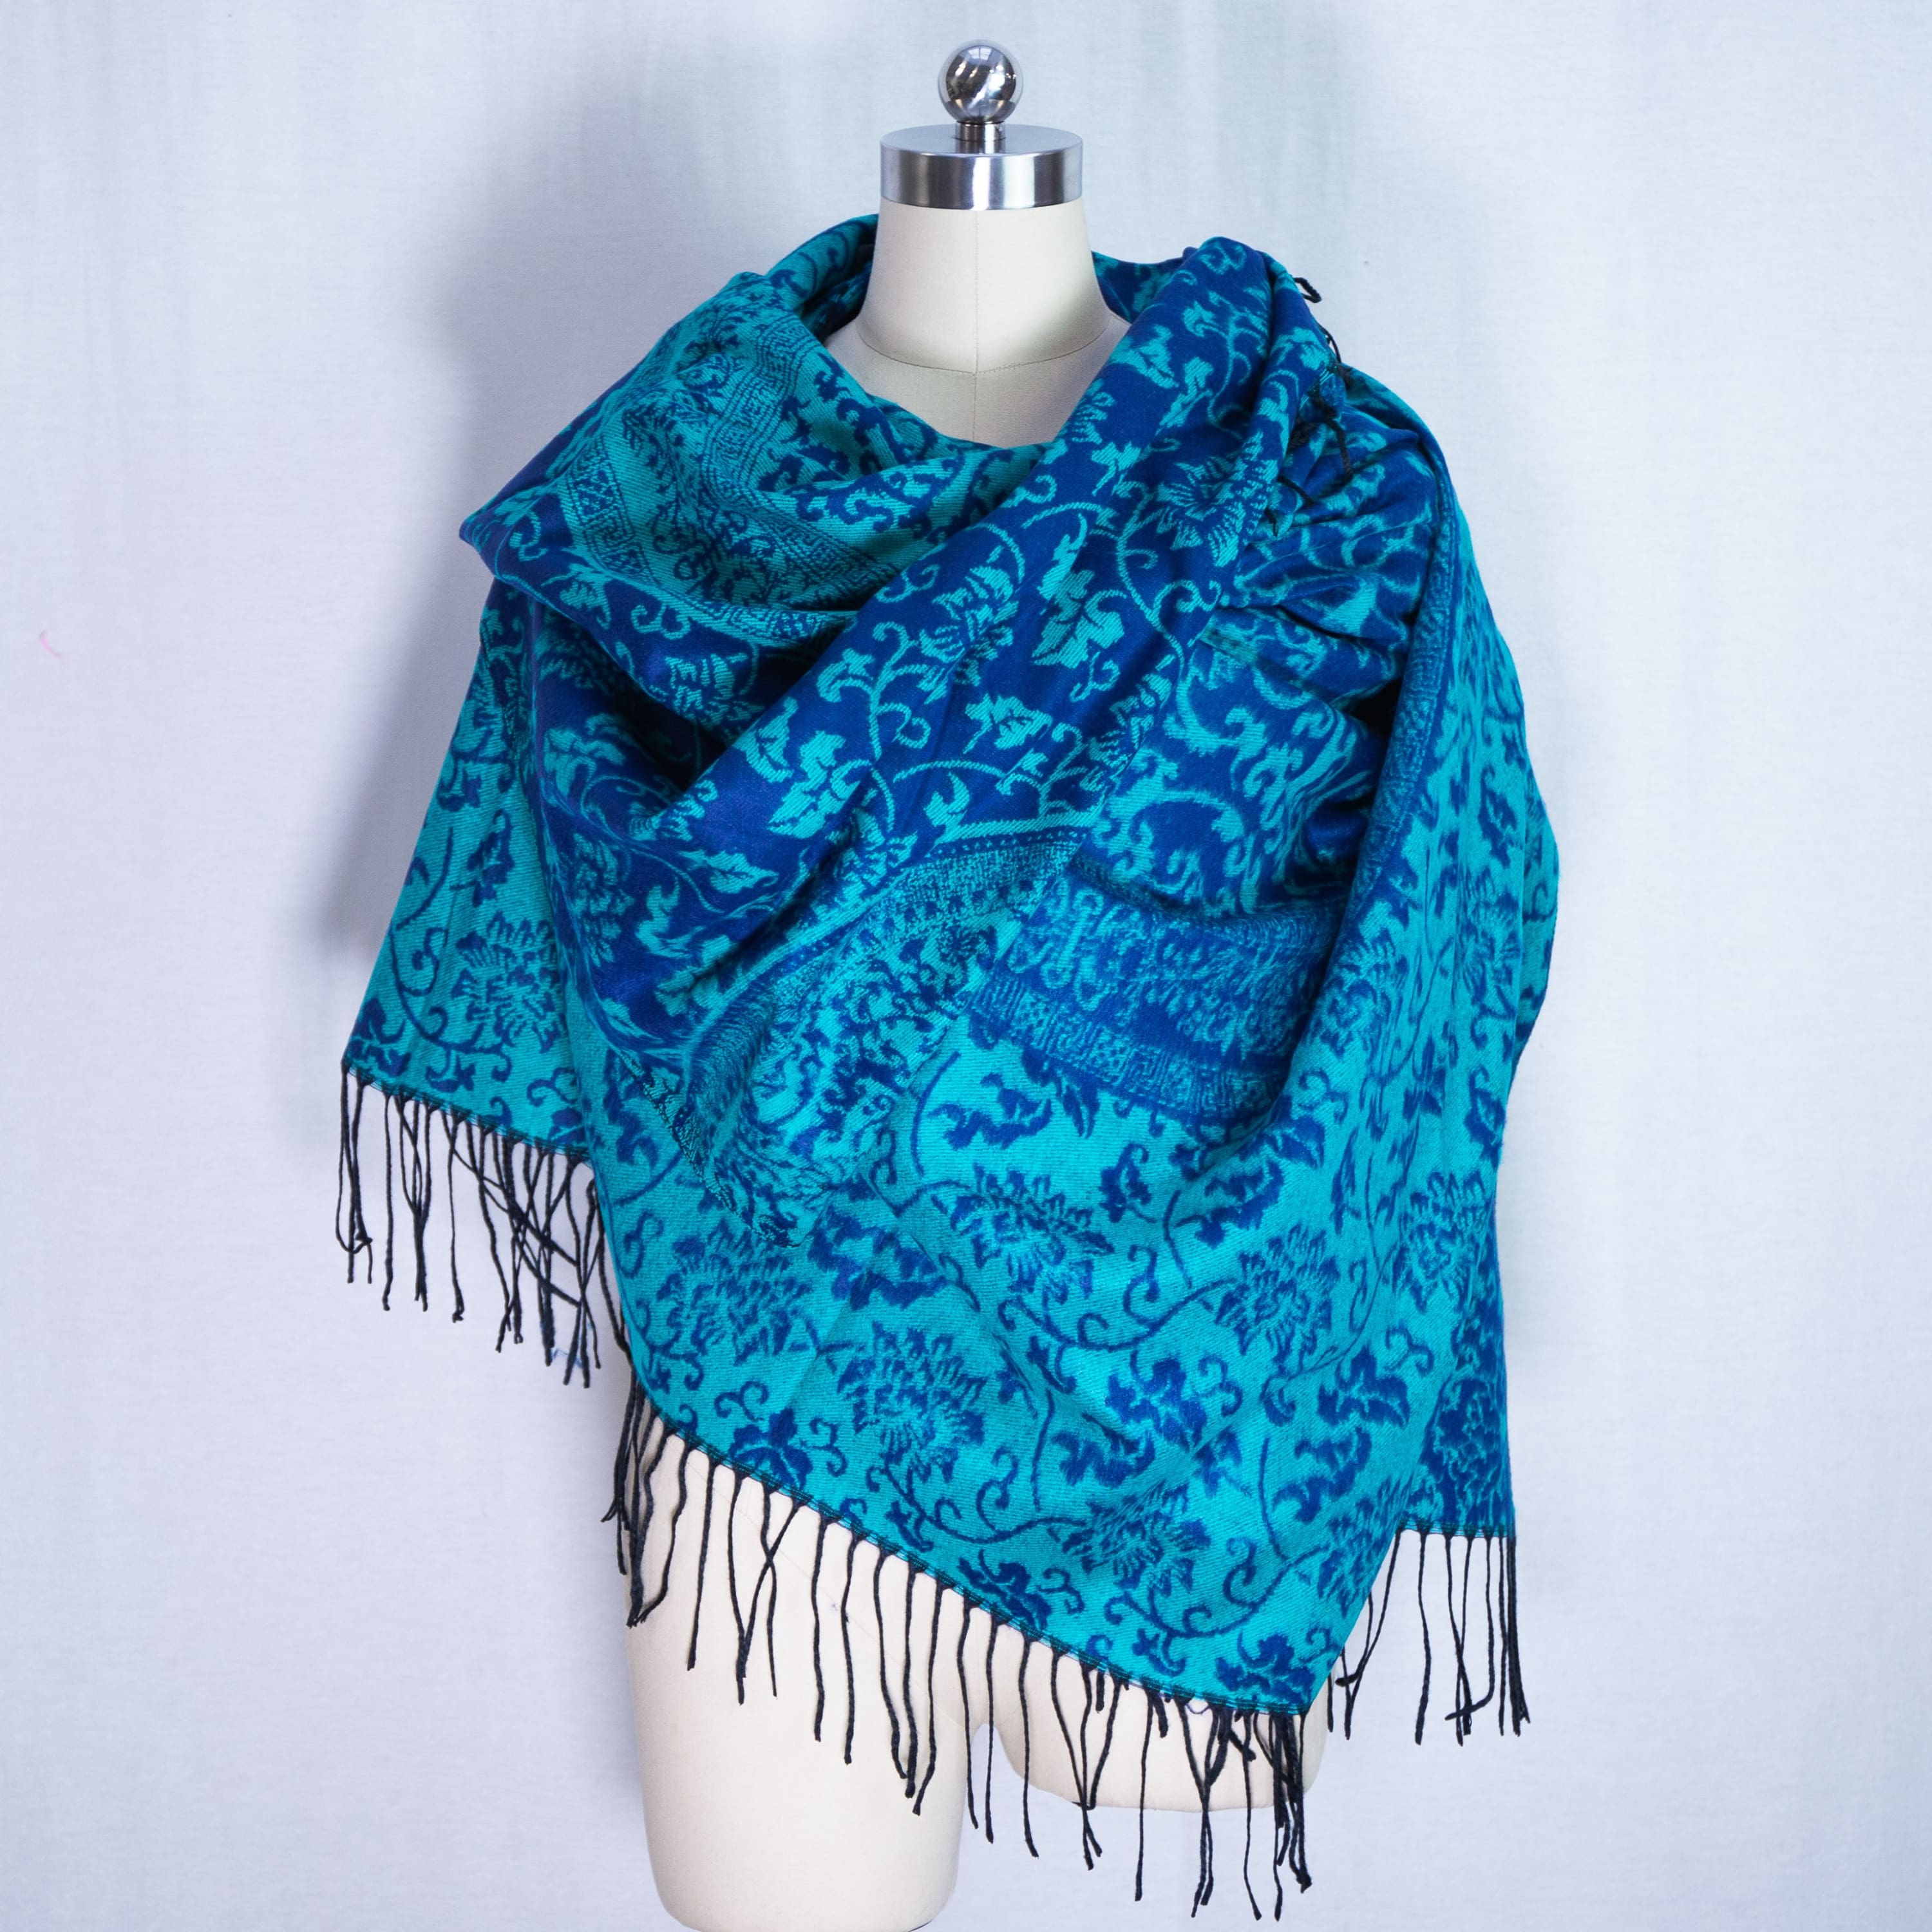 Large shawl cashmere pashmina - Turquoise - shawl